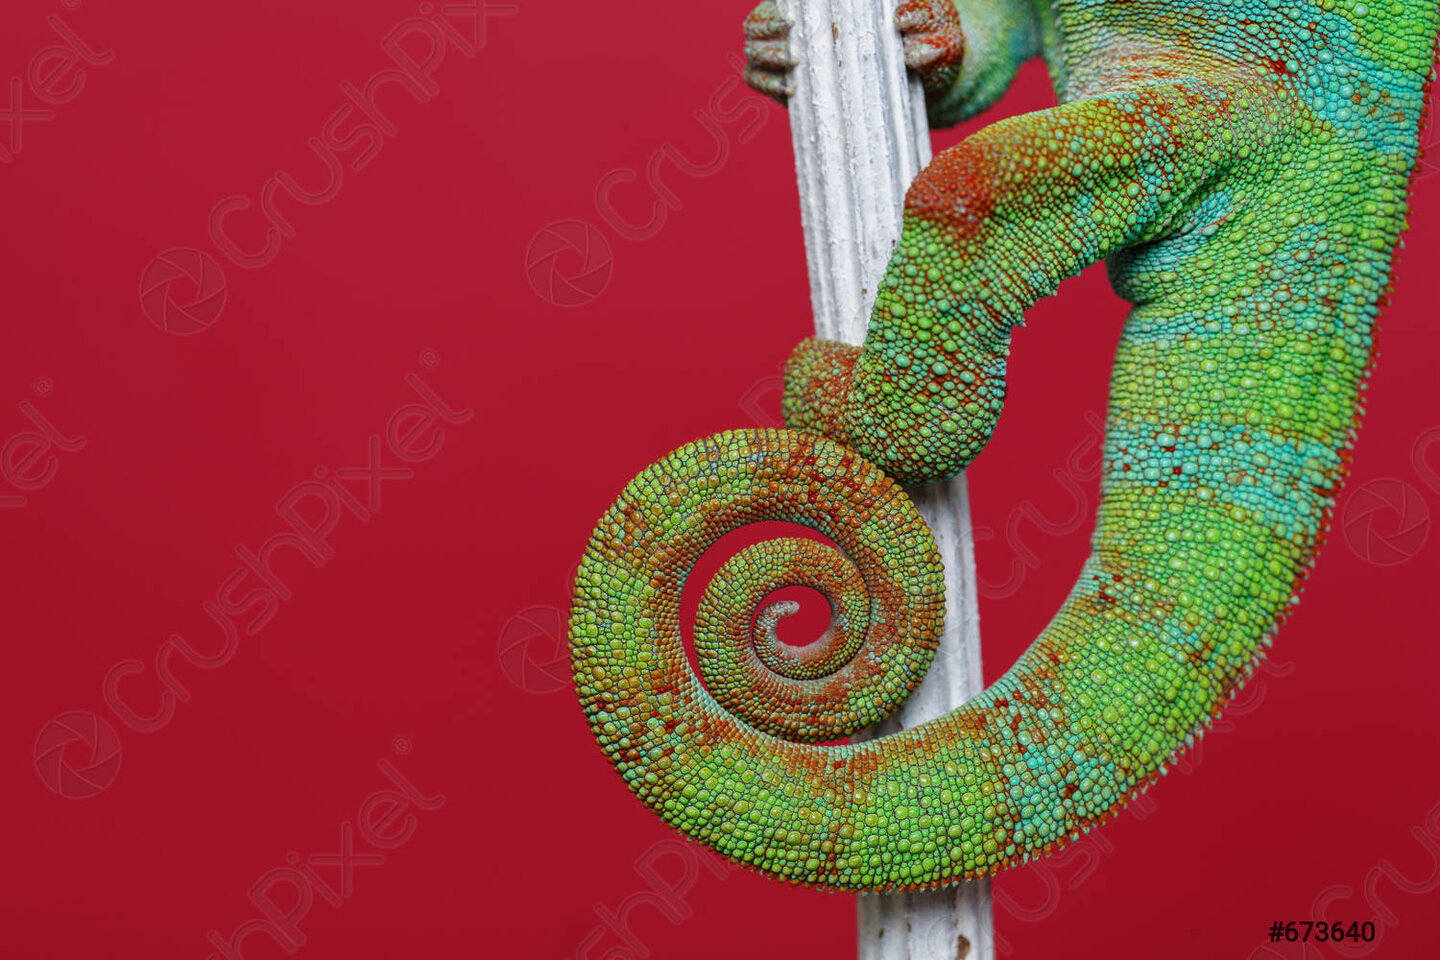 alive-chameleon-reptile-tail-673640.jpg